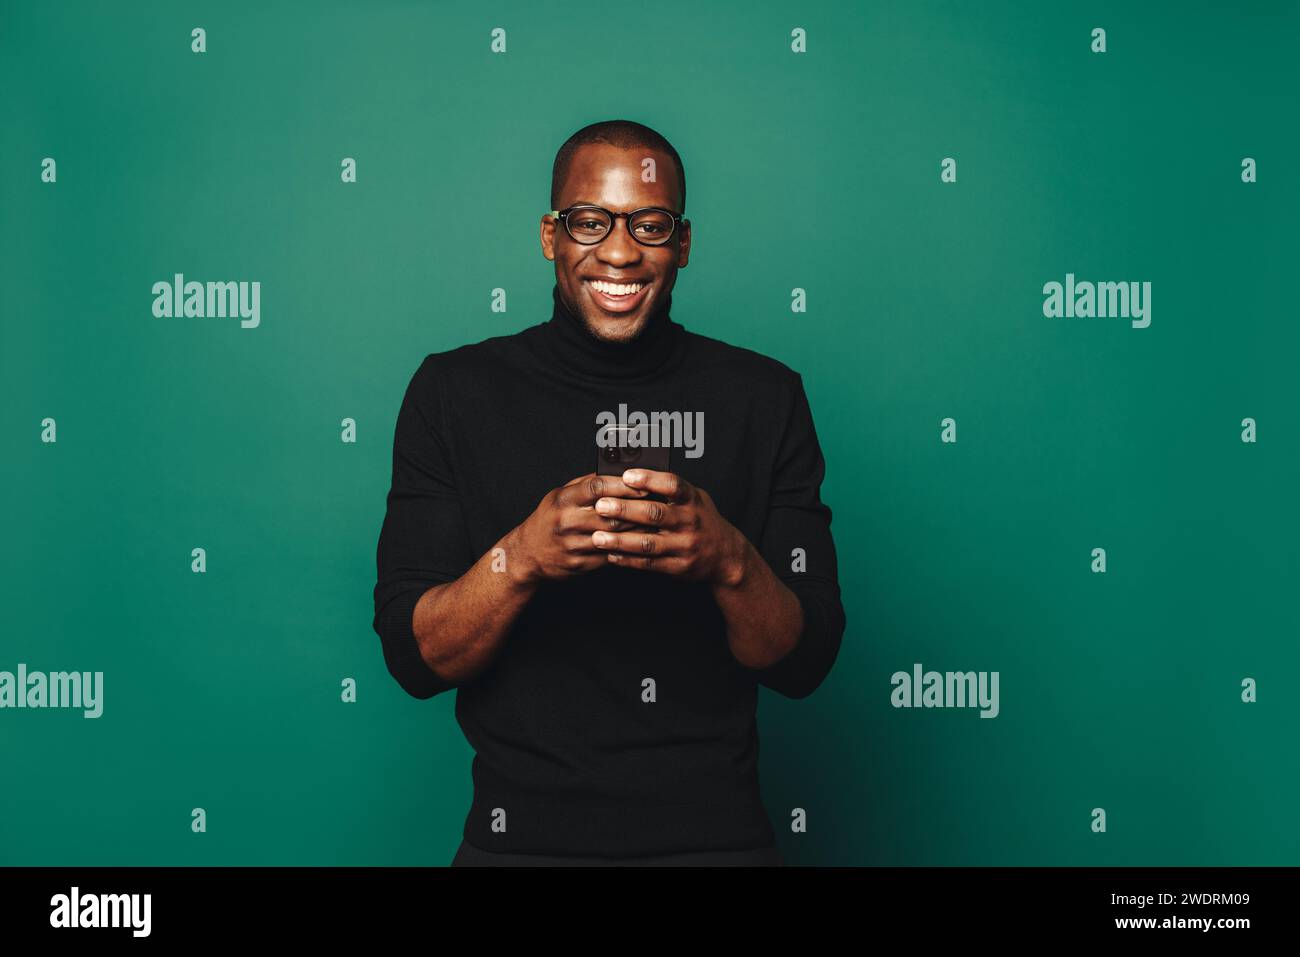 Porträt eines lächelnden jungen Mannes in lässiger Kleidung, der vor grünem Hintergrund steht und ein Smartphone hält. Er bleibt damit verbunden und sozial verbunden Stockfoto